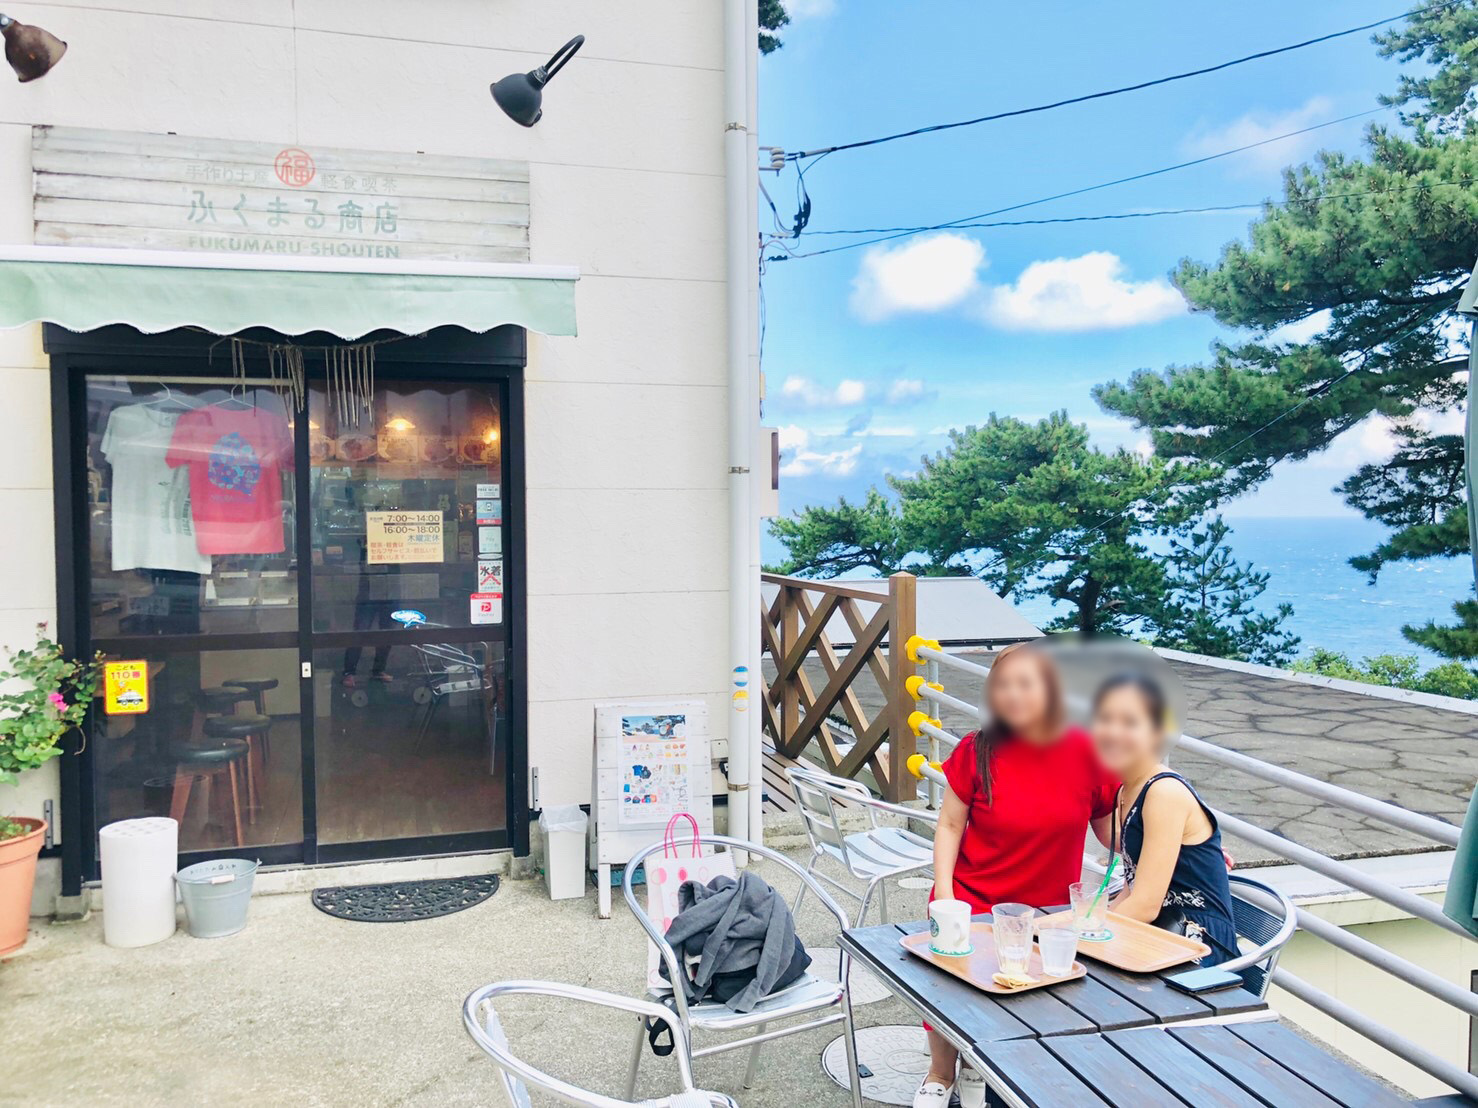 御蔵島唯一のカフェふくまる商店さん